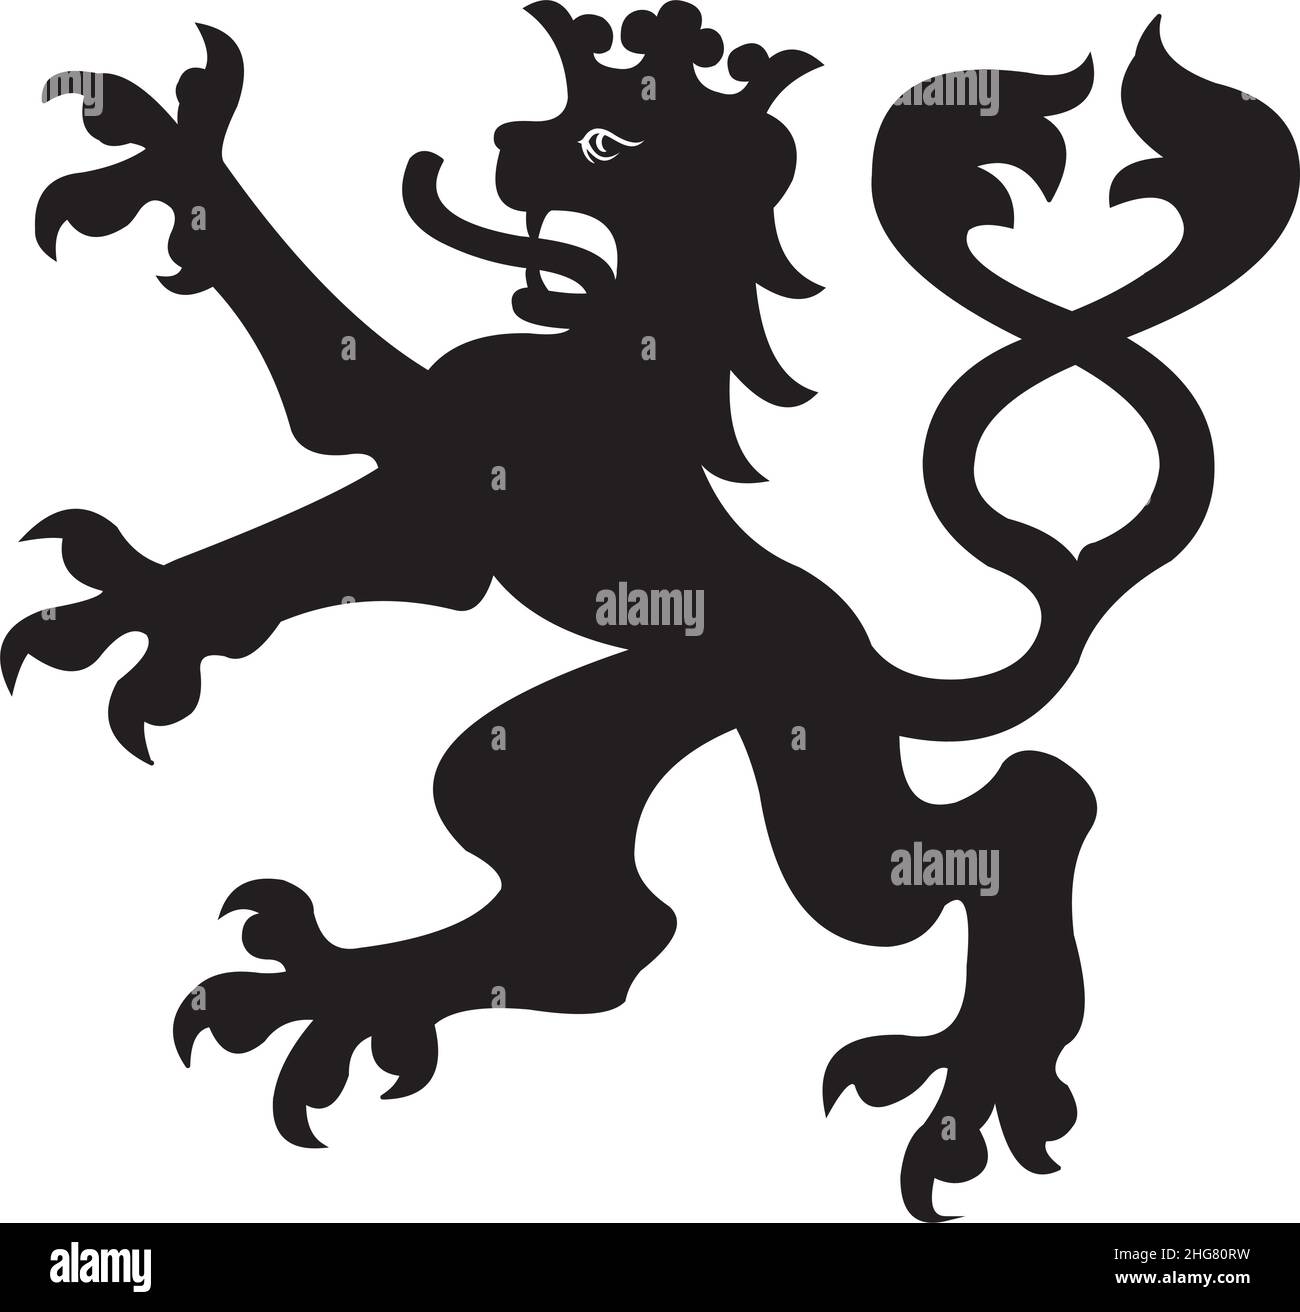 medieval lion symbol black